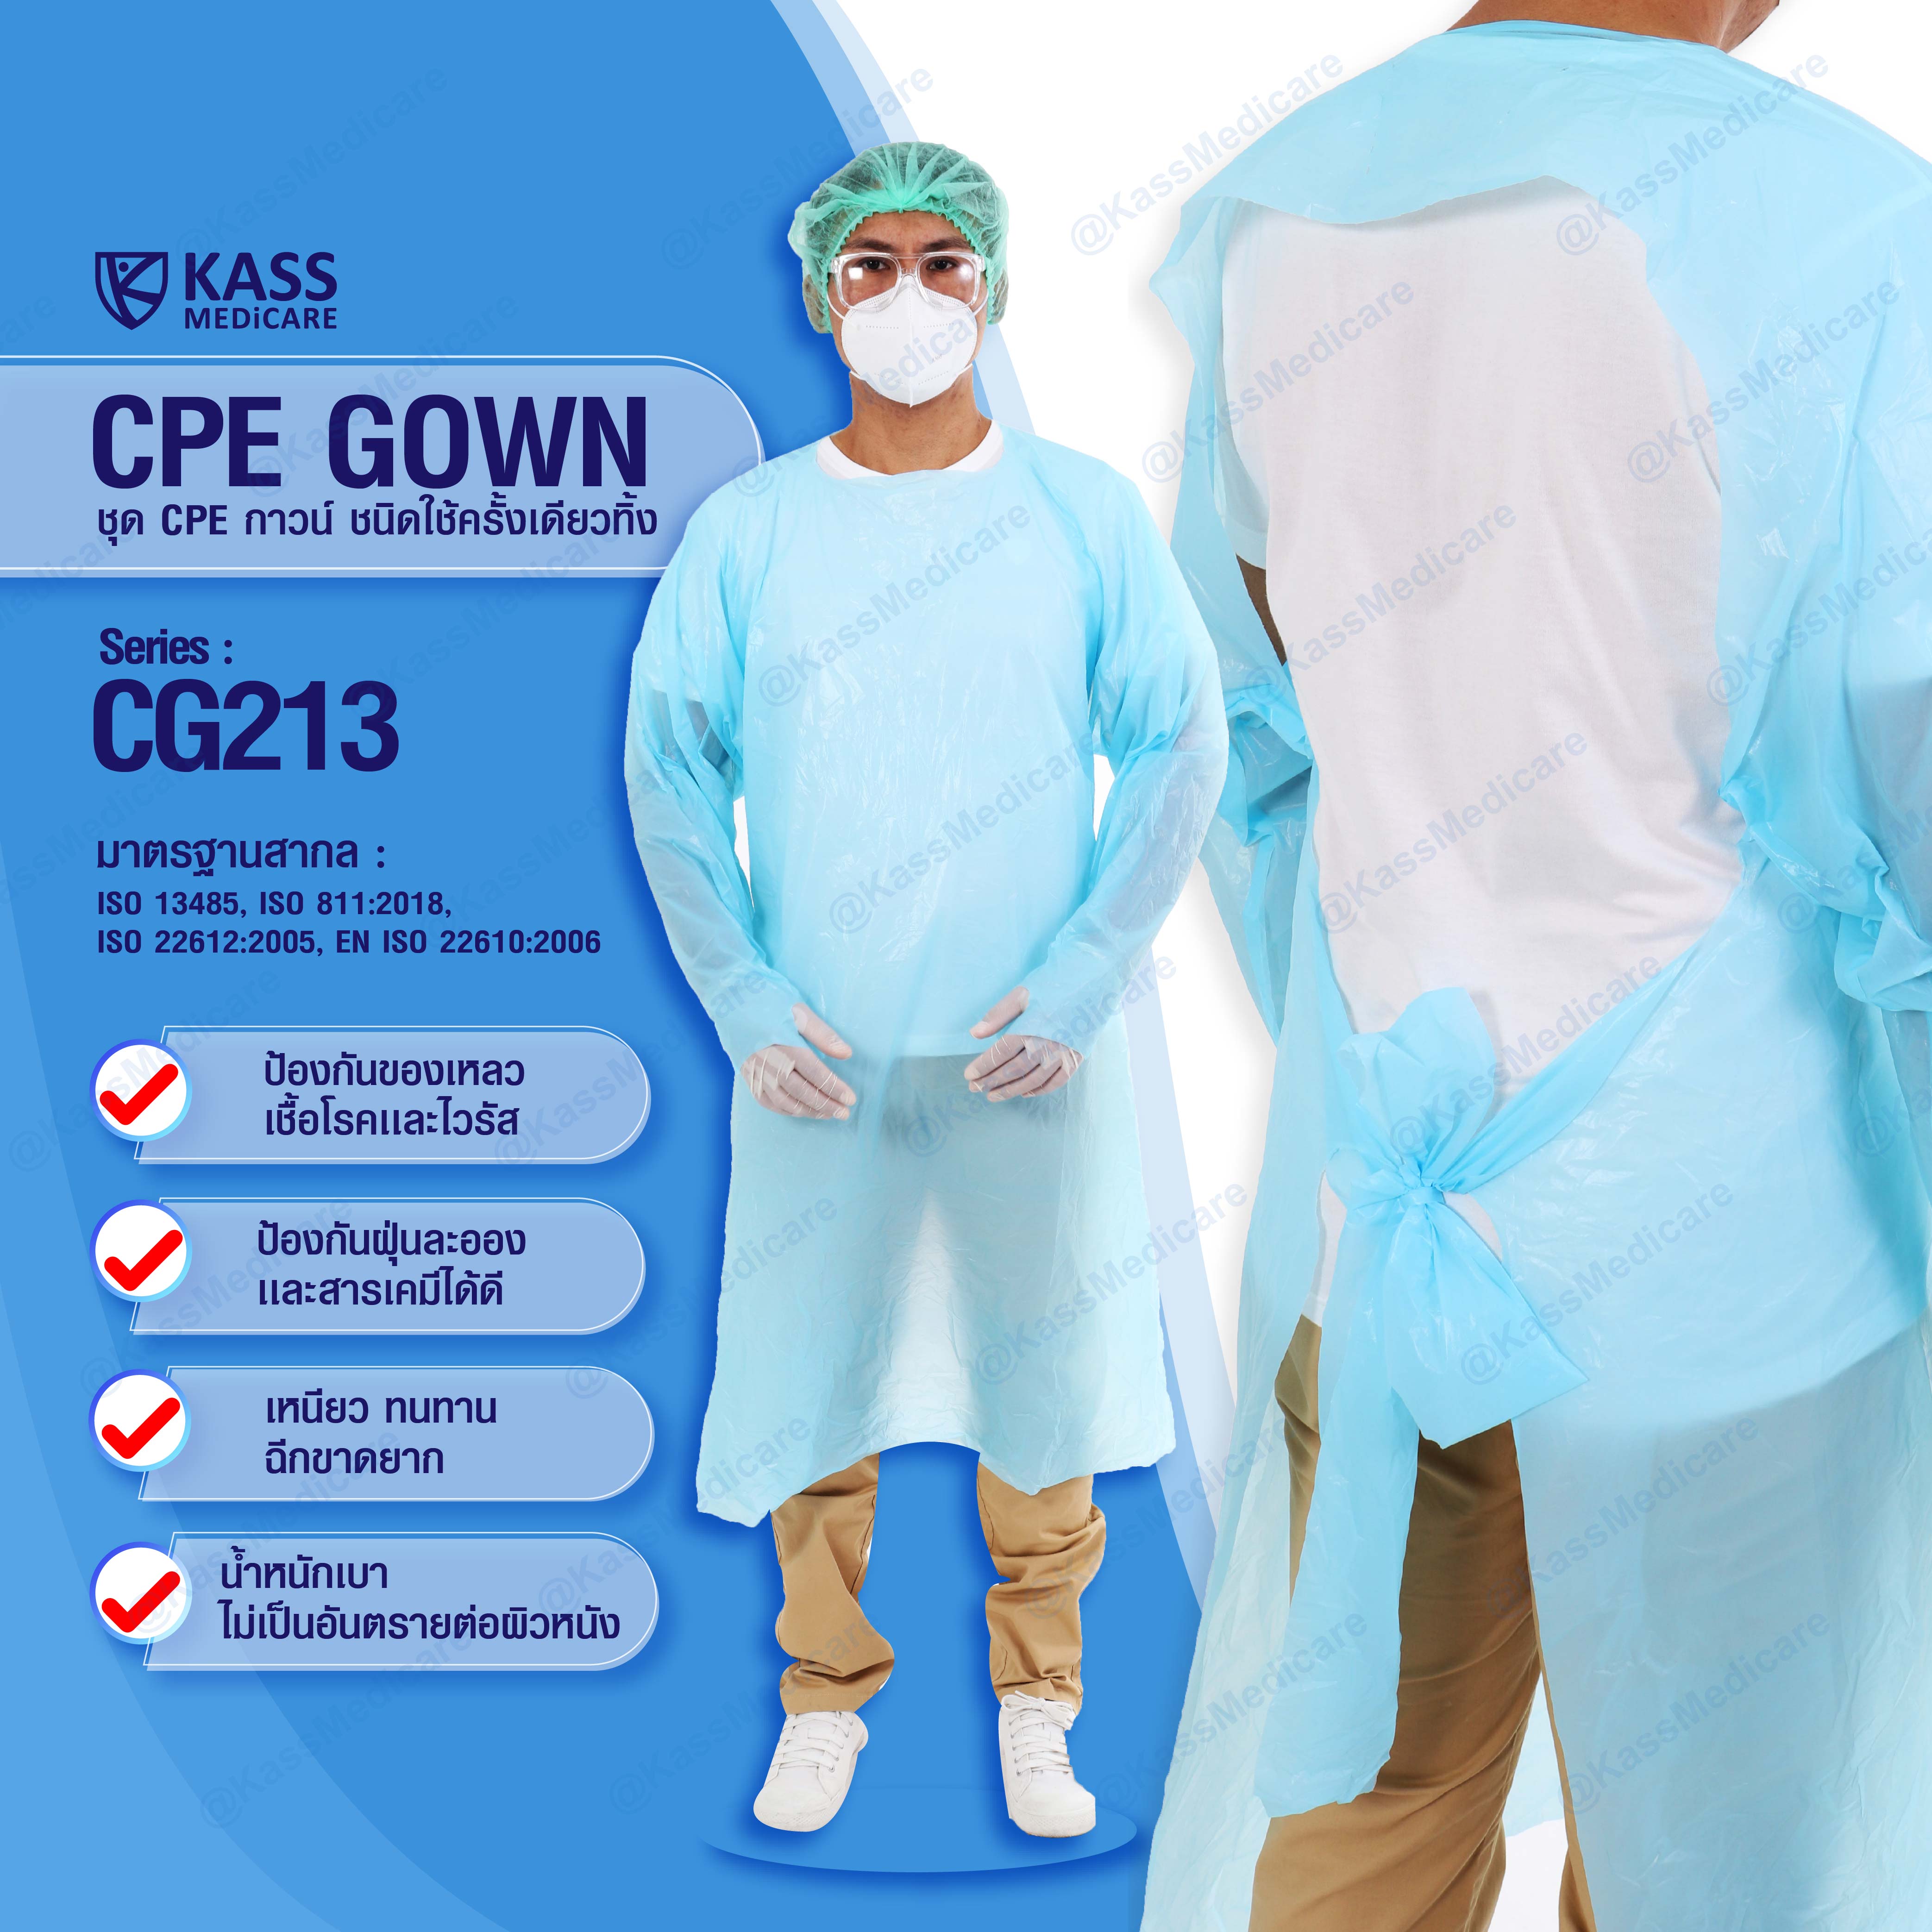 CPE Gown ชุด CPE กาวน์ พลาสติกสีฟ้า ชนิดใช้ครั้งเดียวทิ้ง  พร้อมส่ง ISO13485, ISO811:2018, ISO22612:2005, EN ISO22610:2006